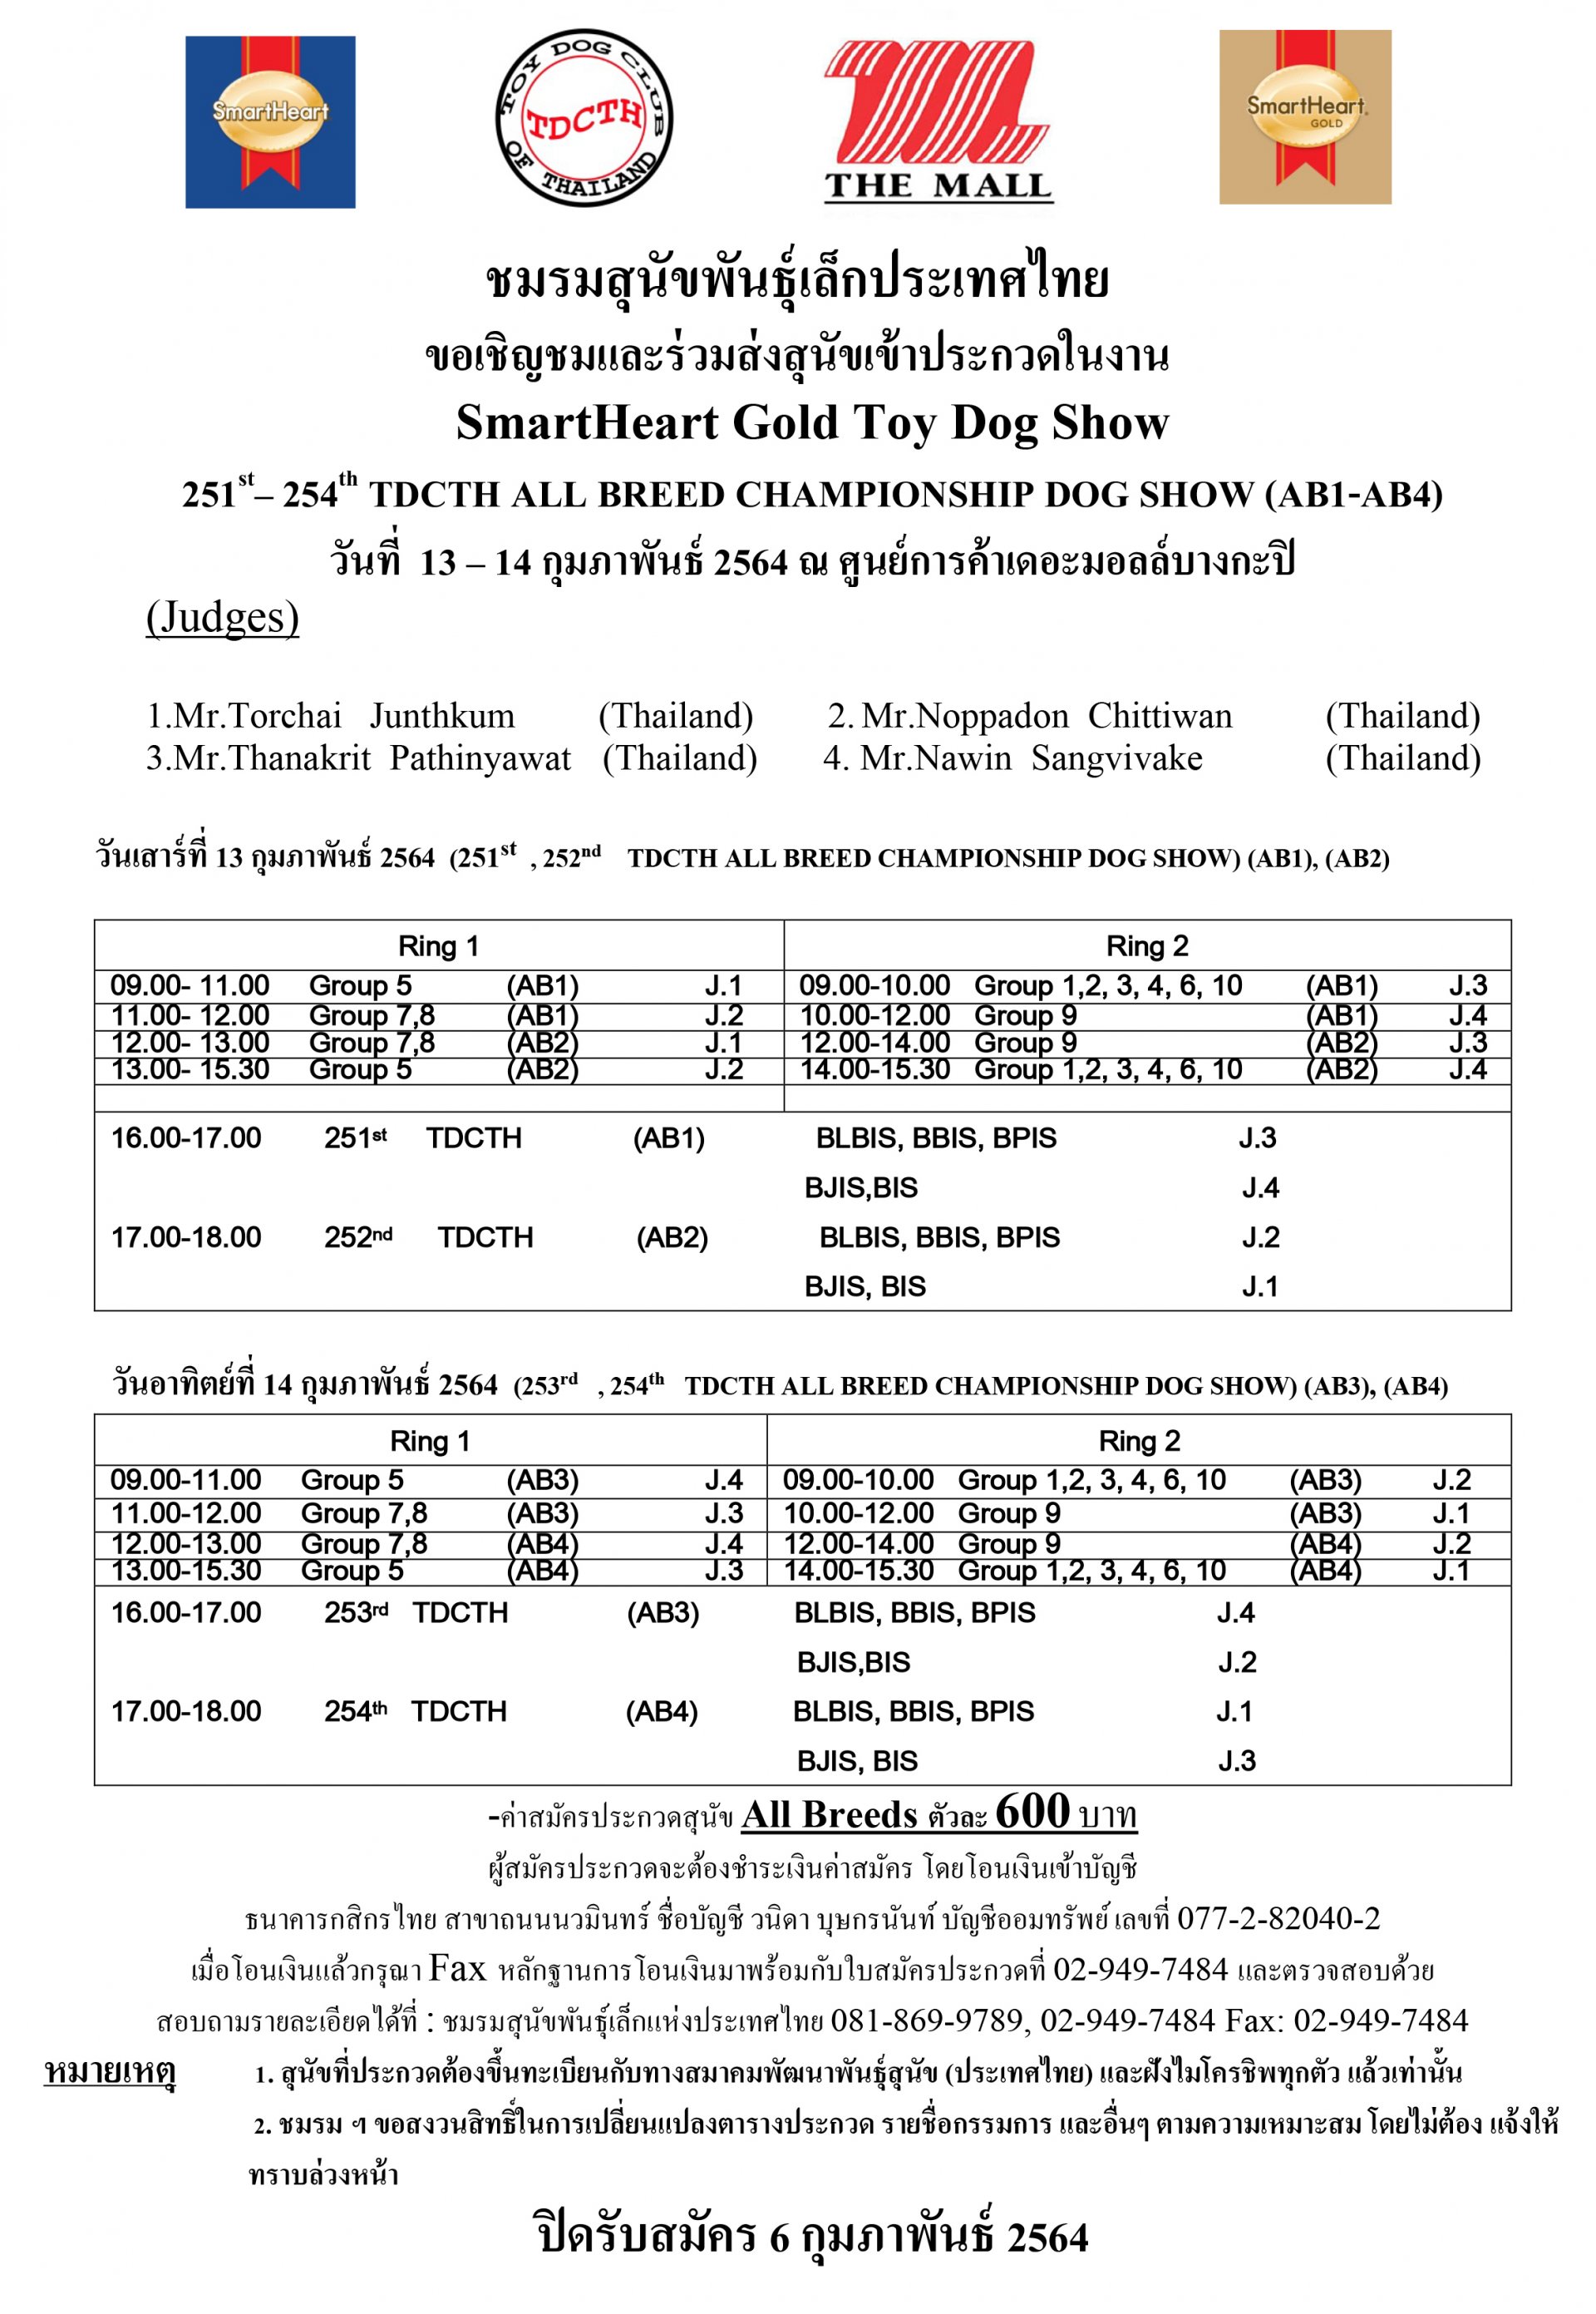 ประกวดสุนัขงานSmartHeart Gold Toy Dog Show 2021